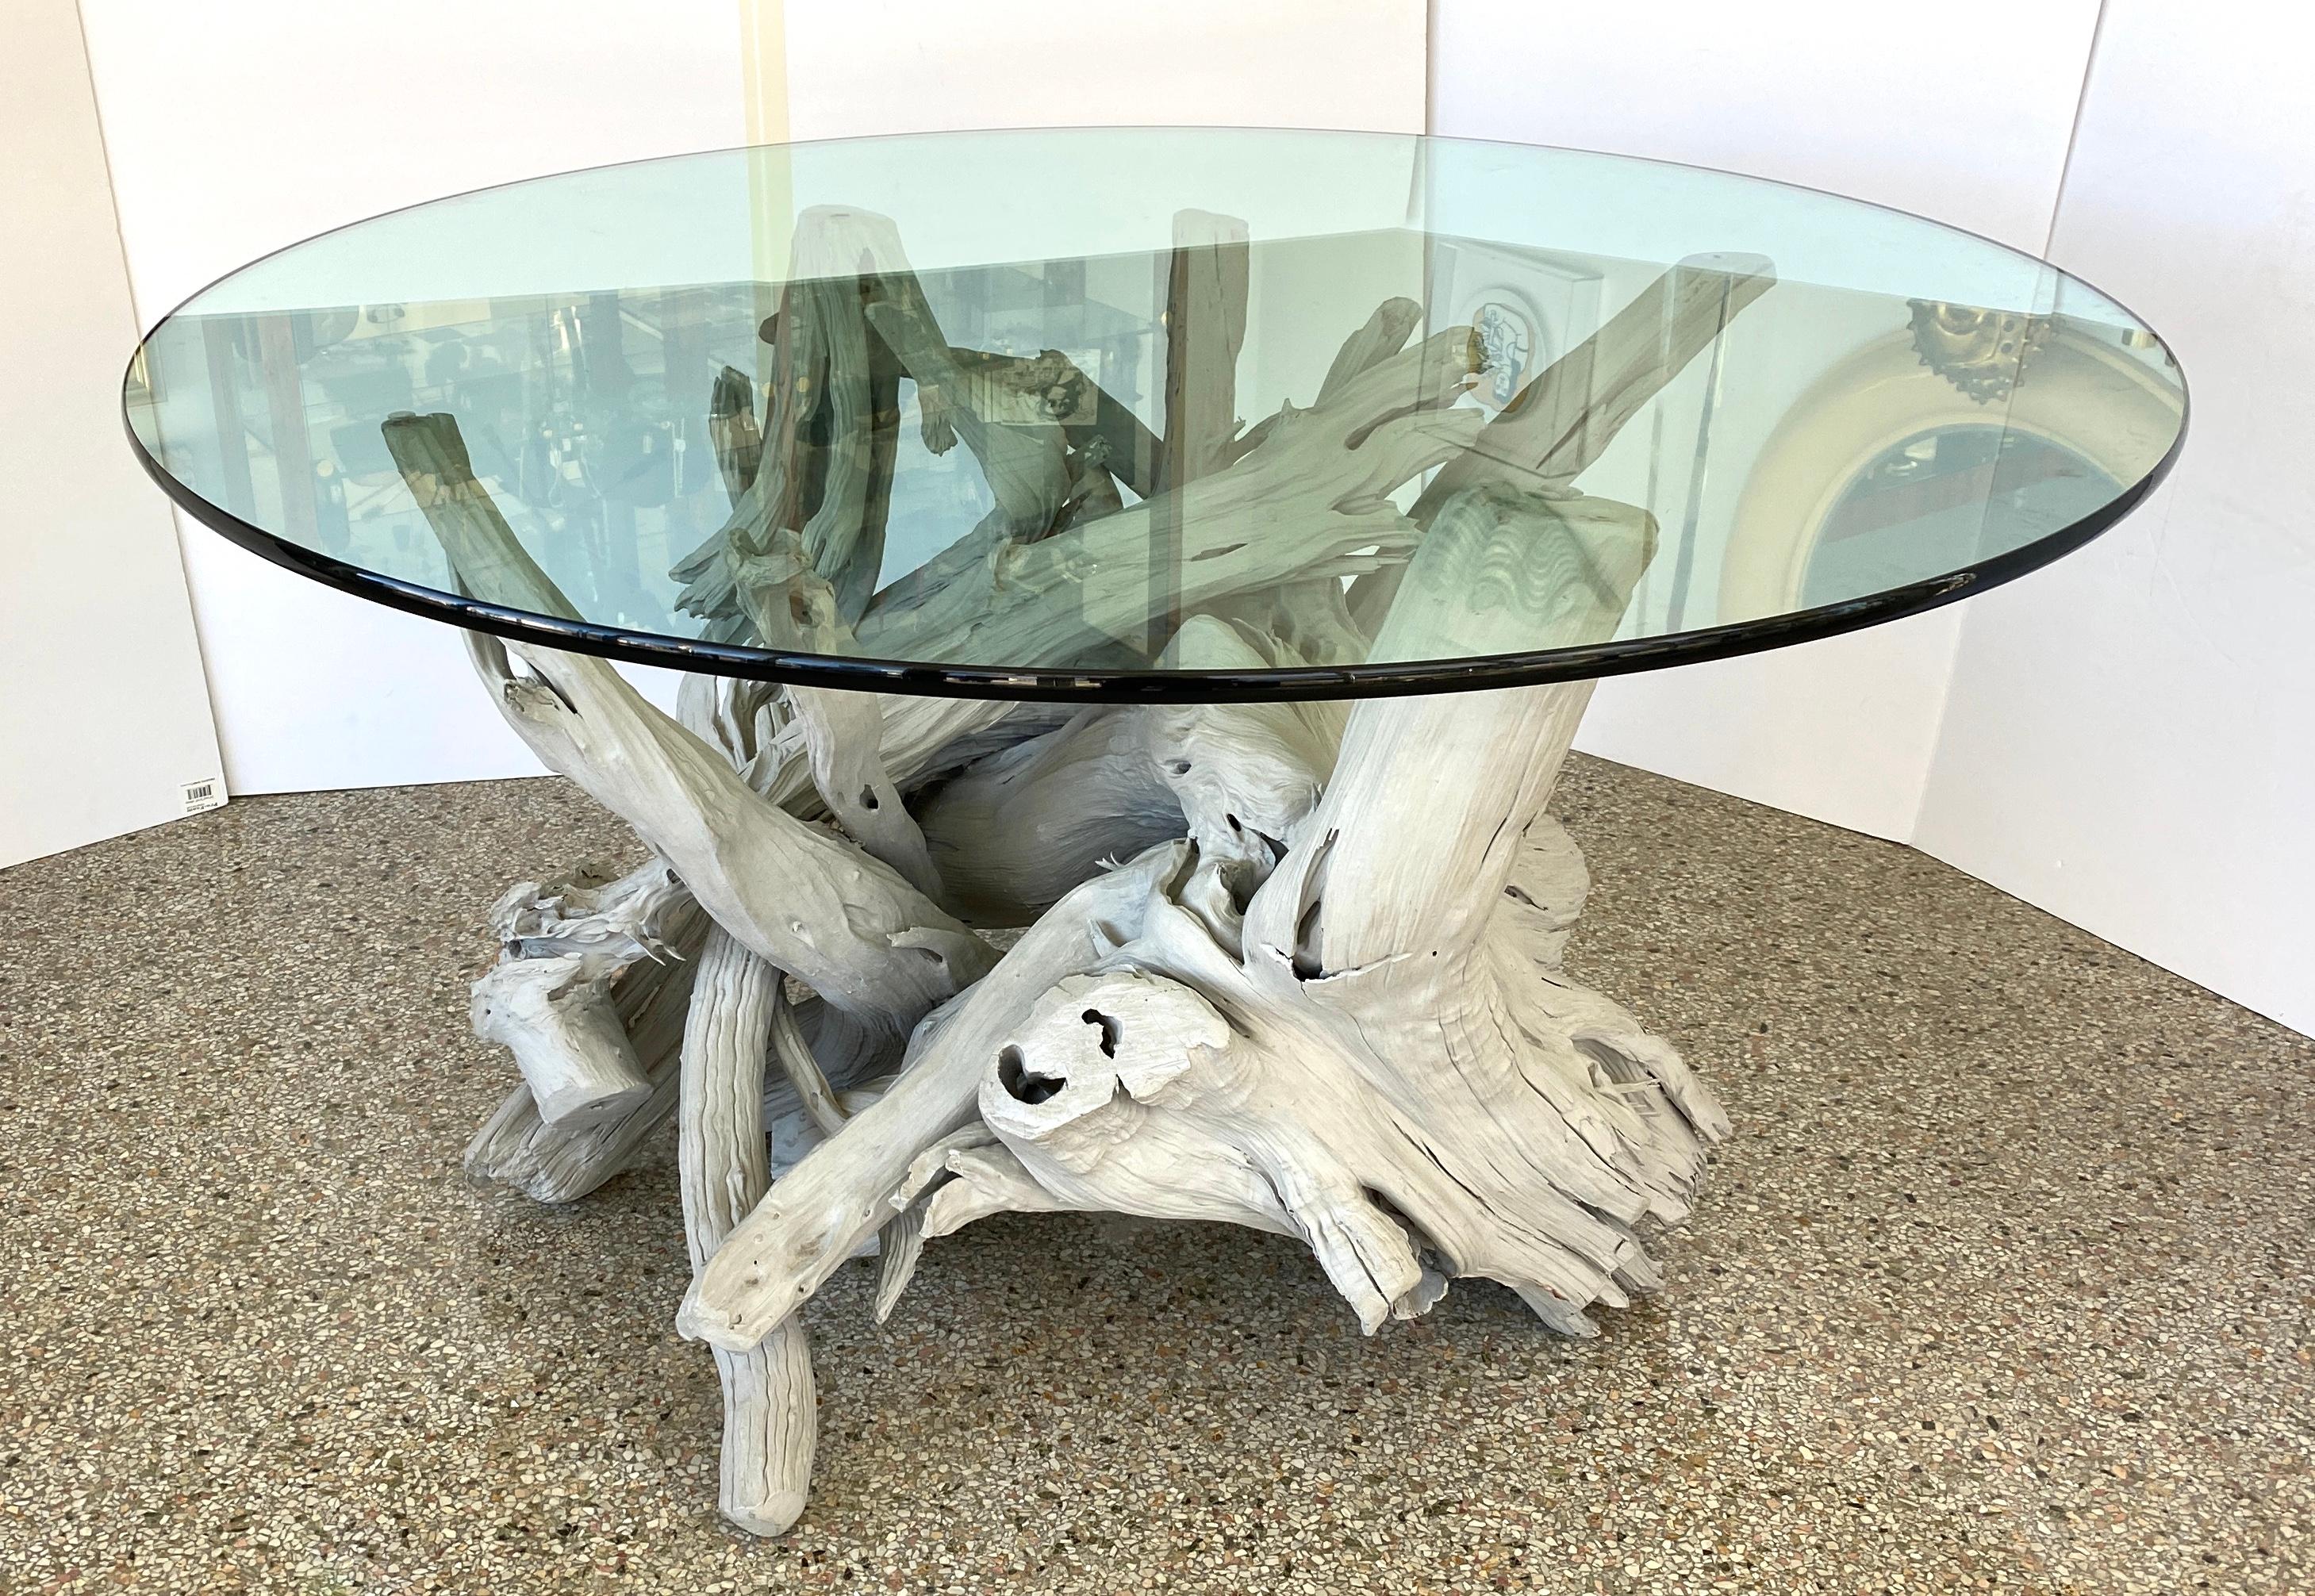 Dieser stilvolle und schicke Tisch aus Treibholz mit seiner hellgrauen Oberfläche setzt mit seiner Form, seiner Farbgebung und seinem großen Maßstab ein subtiles Zeichen. 

Hinweis: Das Glas ist 0,75